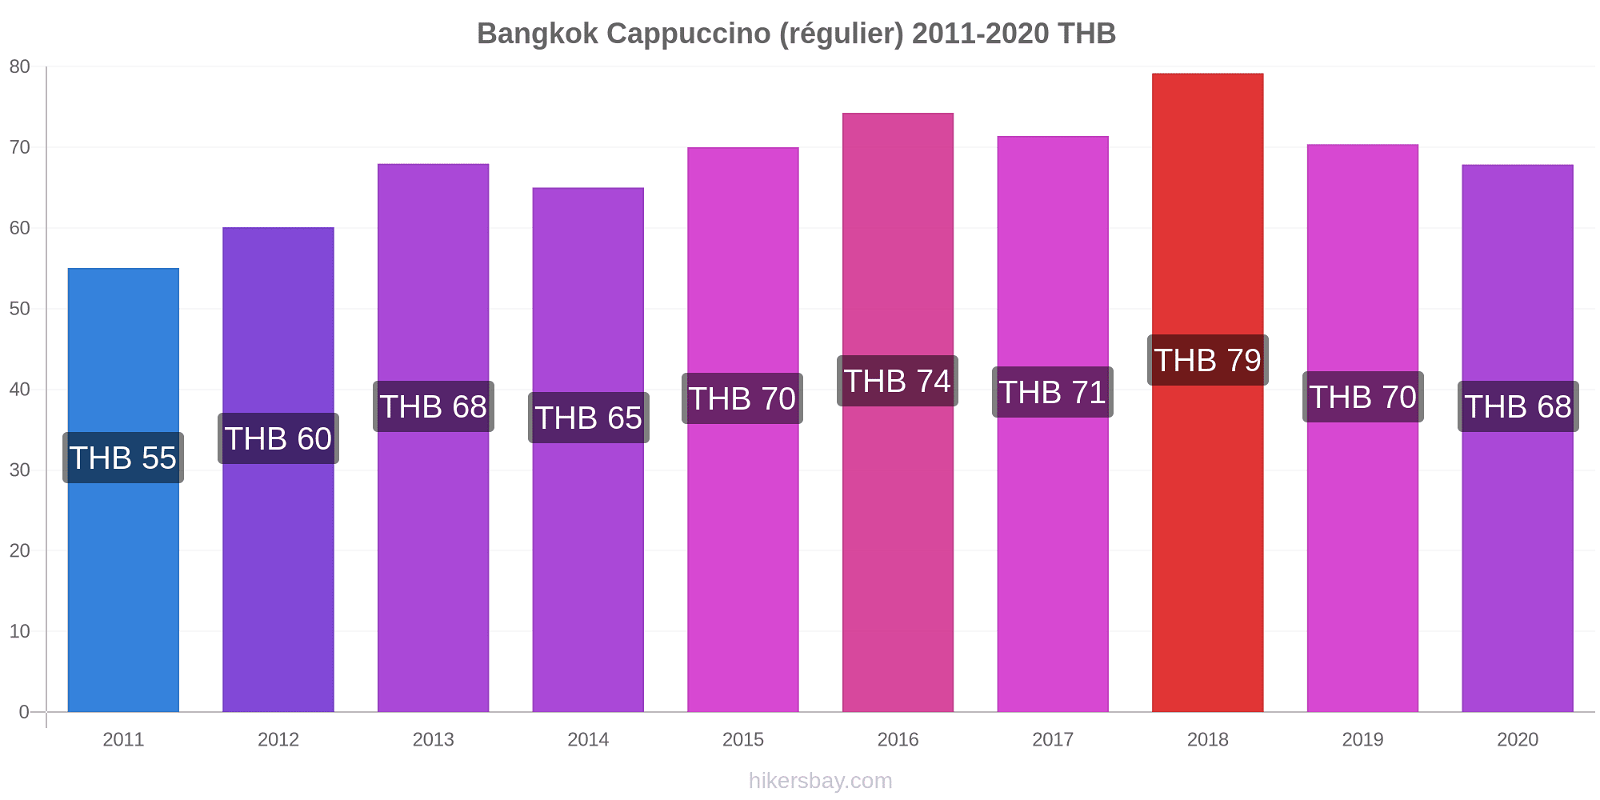 Bangkok changements de prix Cappuccino (régulier) hikersbay.com